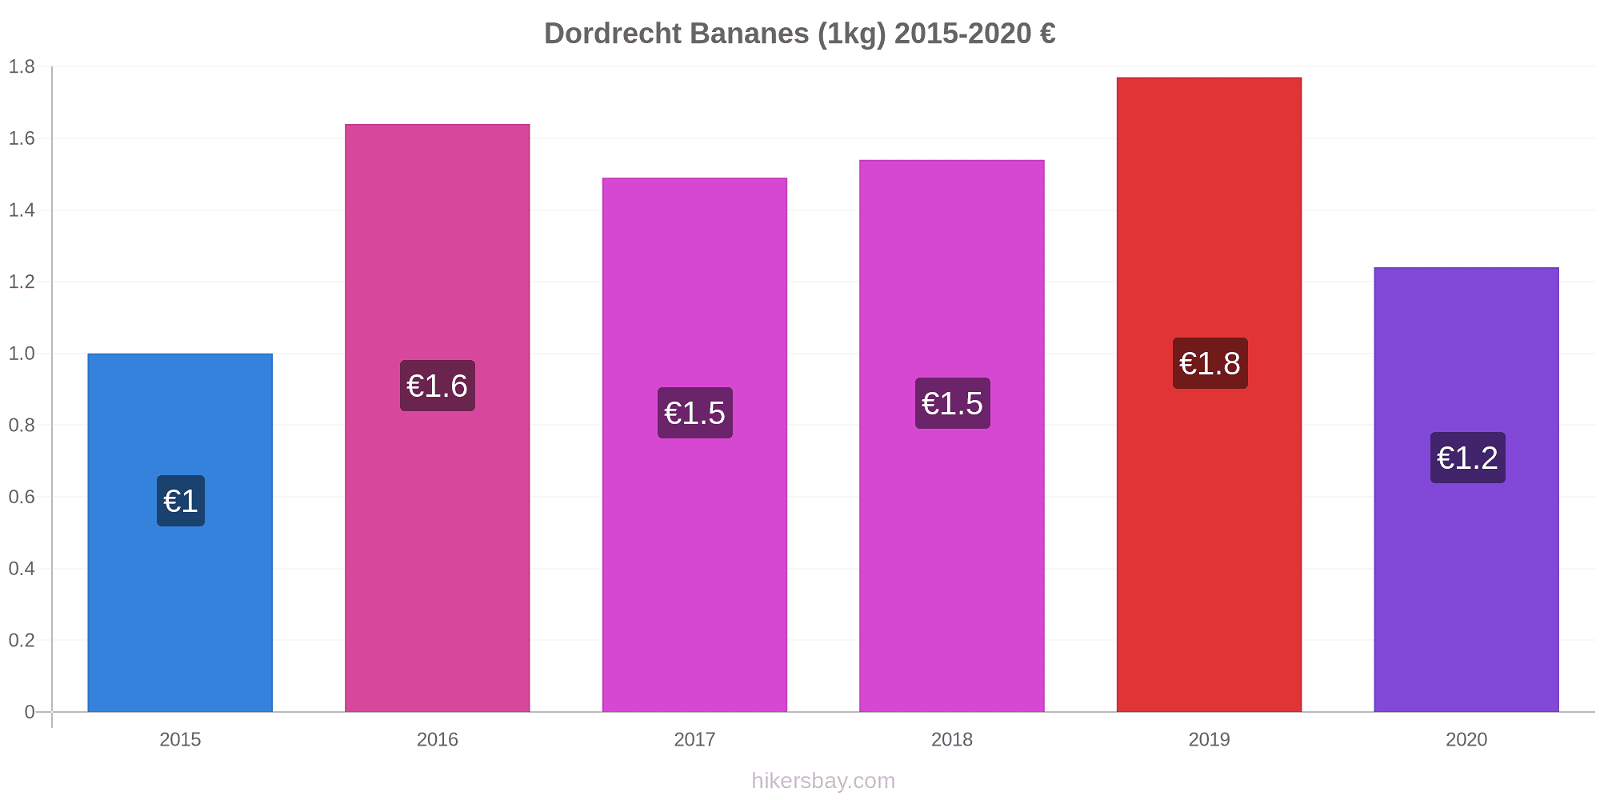 Dordrecht changements de prix Bananes (1kg) hikersbay.com